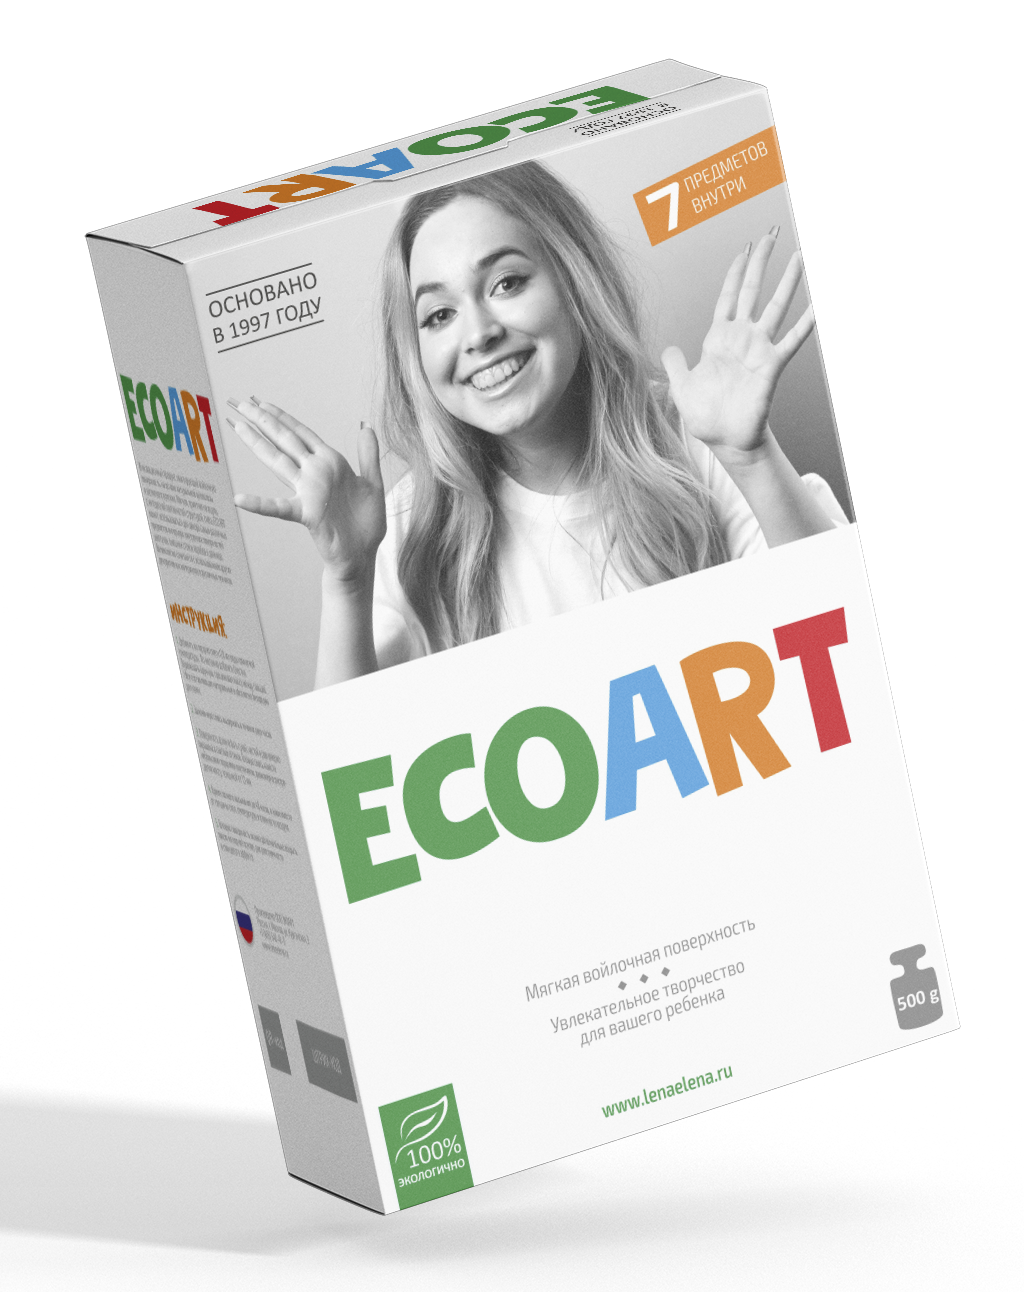    EcoArt